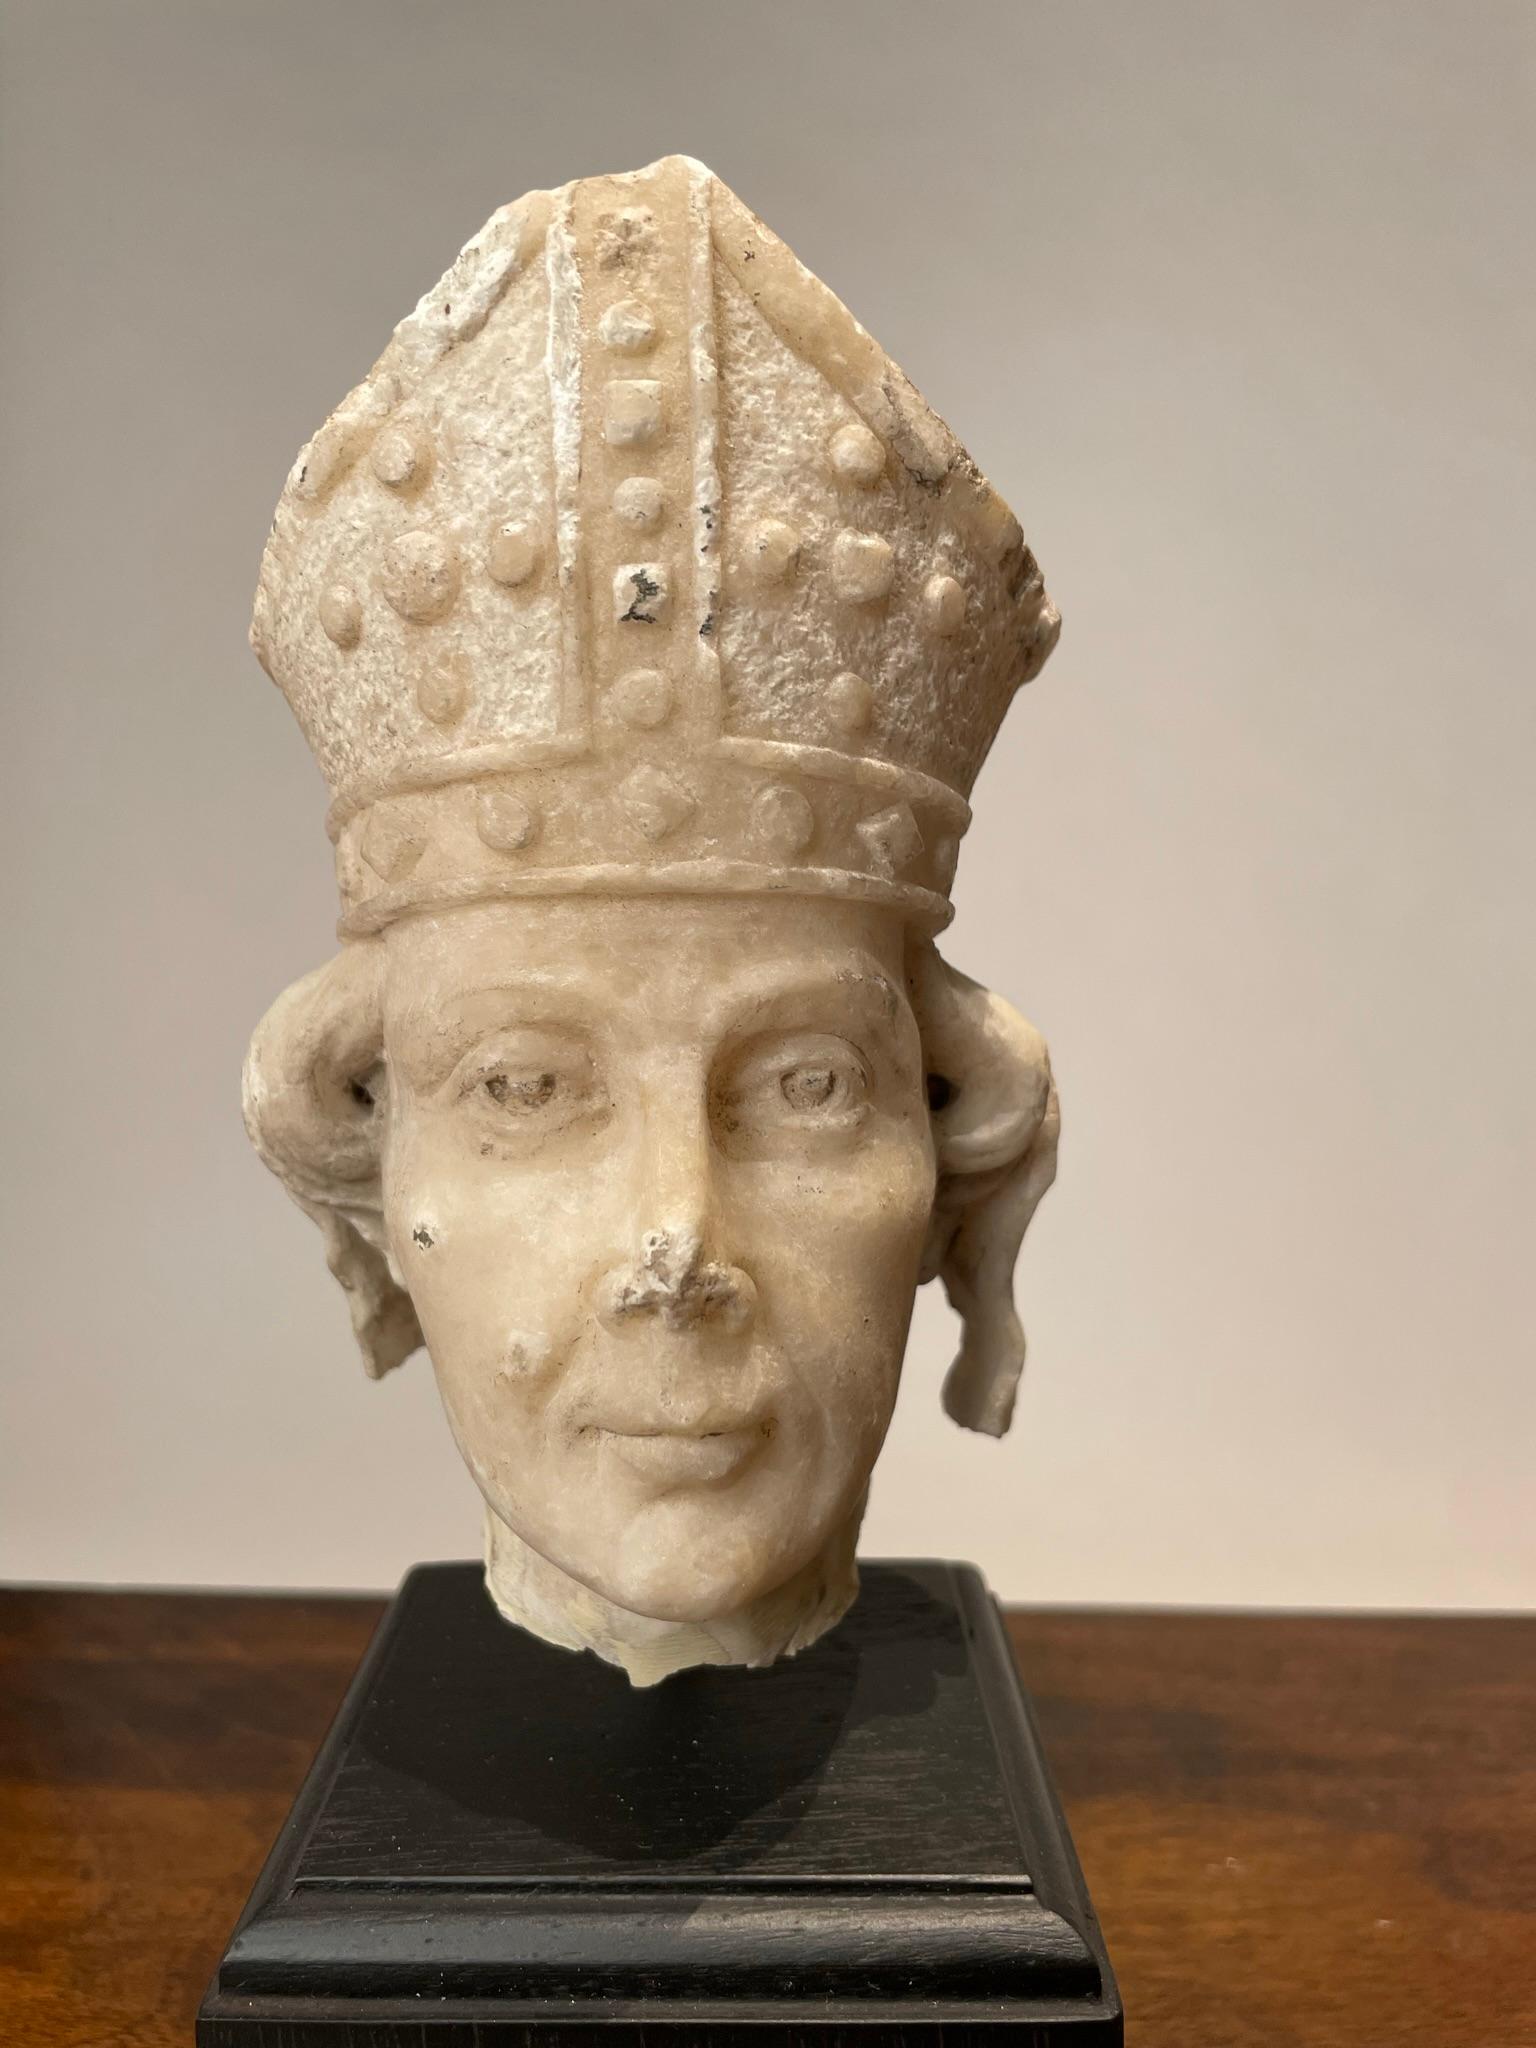 Tête de saint en albâtre sculpté de style gothique italien du XIXe siècle, portant une mitre d'évêque. Bien qu'il s'agisse d'un fragment, le regard intense de cette petite sculpture lui donne beaucoup de présence. Réalisée par un maître sculpteur,